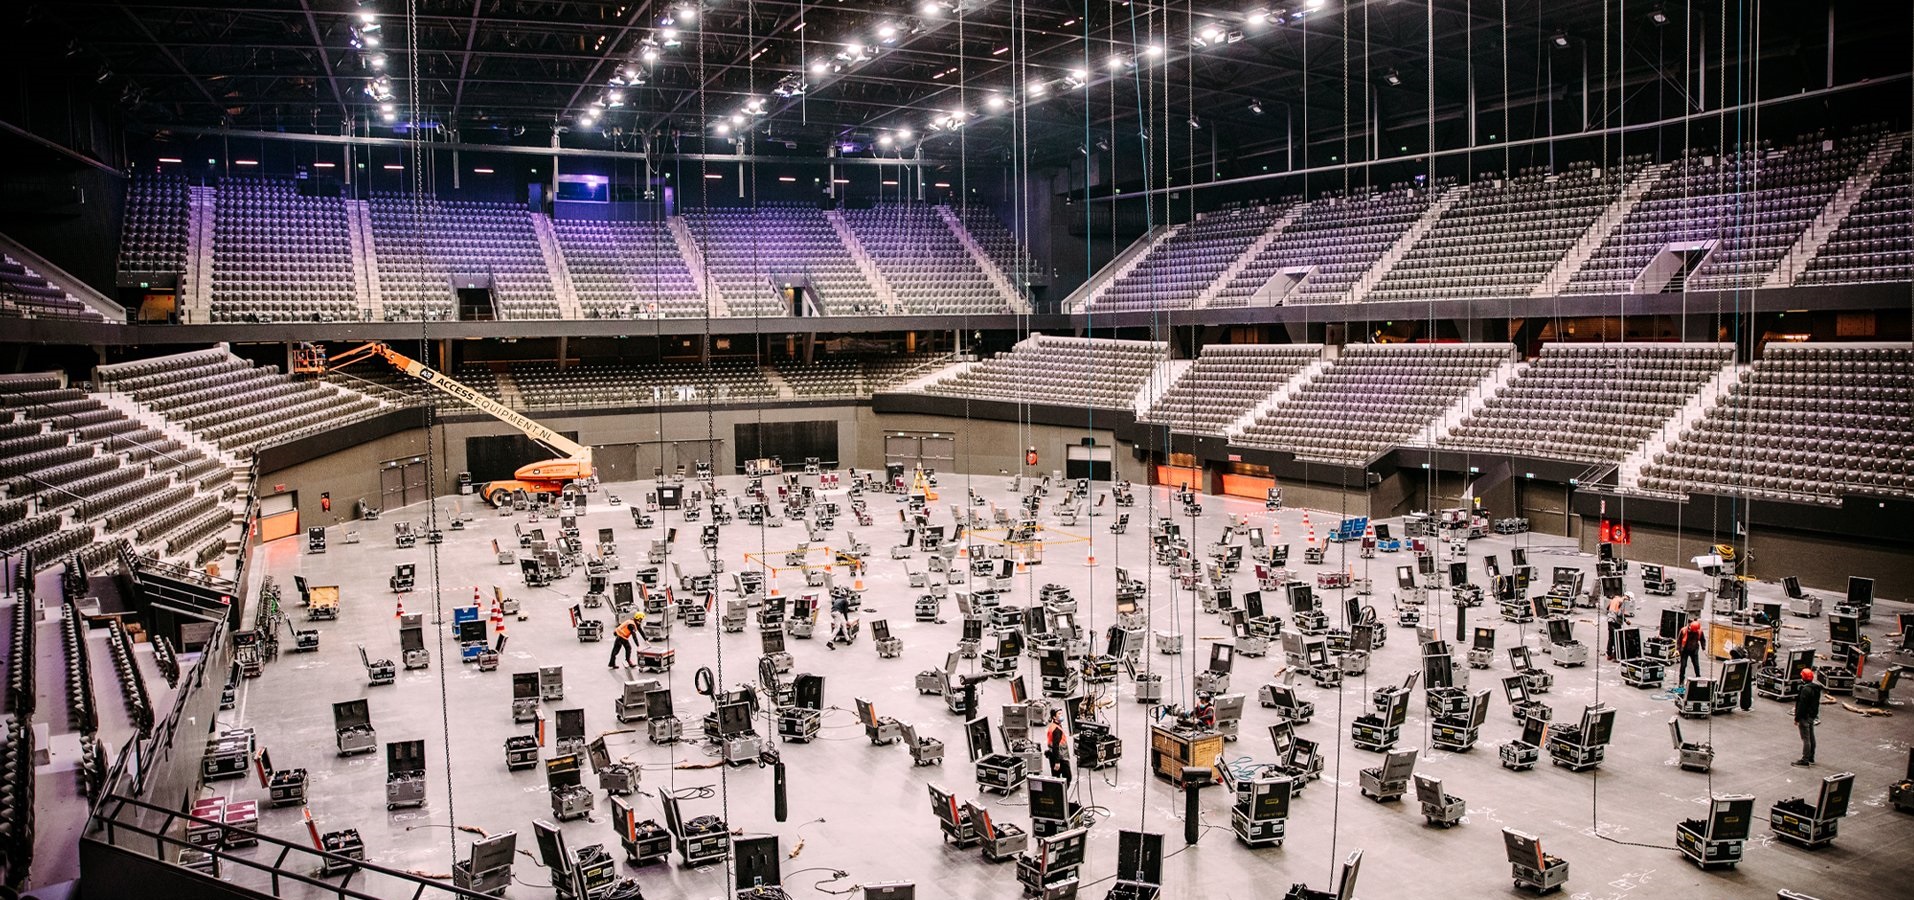 eurovisão,palco,montado,roterdão,festival, Palco do Festival da Eurovisão começa a ser montado em Roterdão